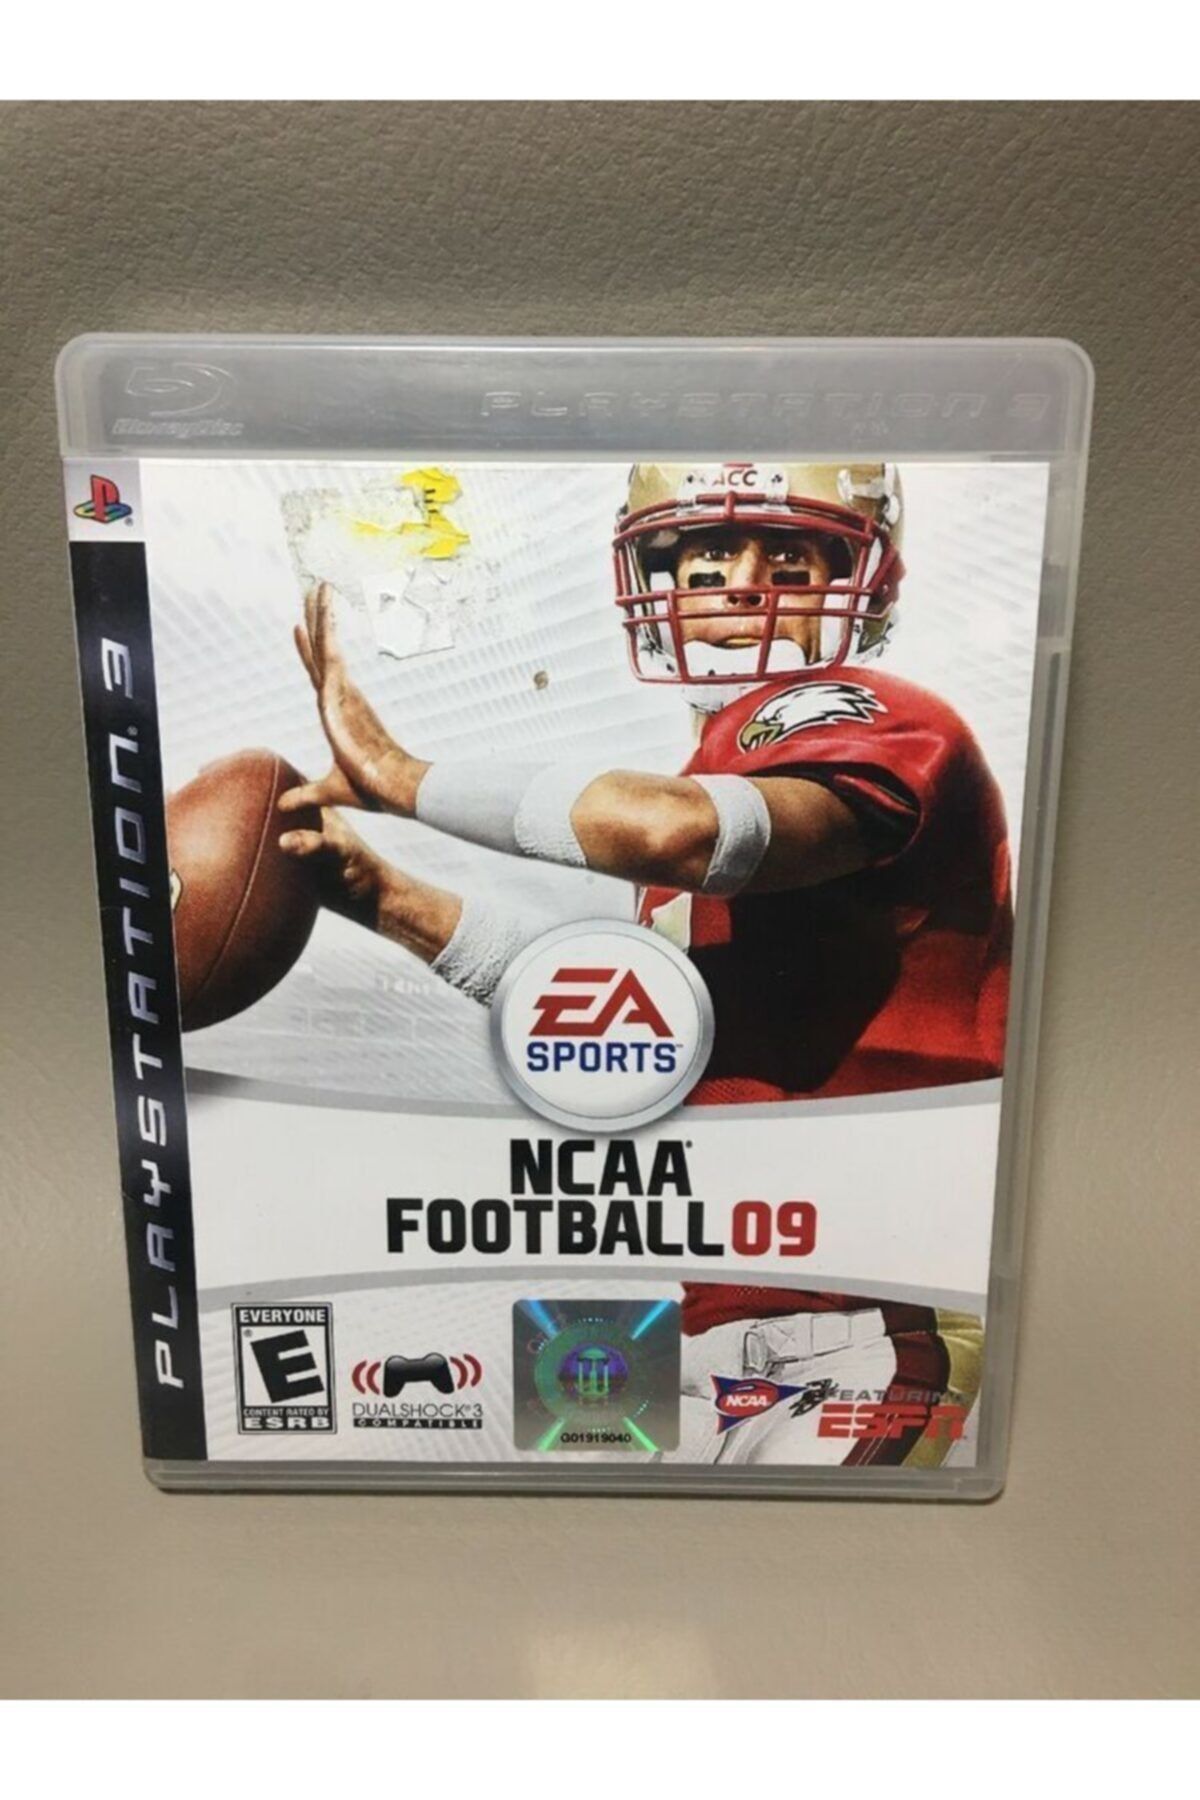 EA Sports Kolleksiyonluk Playstation 3 Oyunu ( Ncaa Football 09 Ps3 )--2.el--